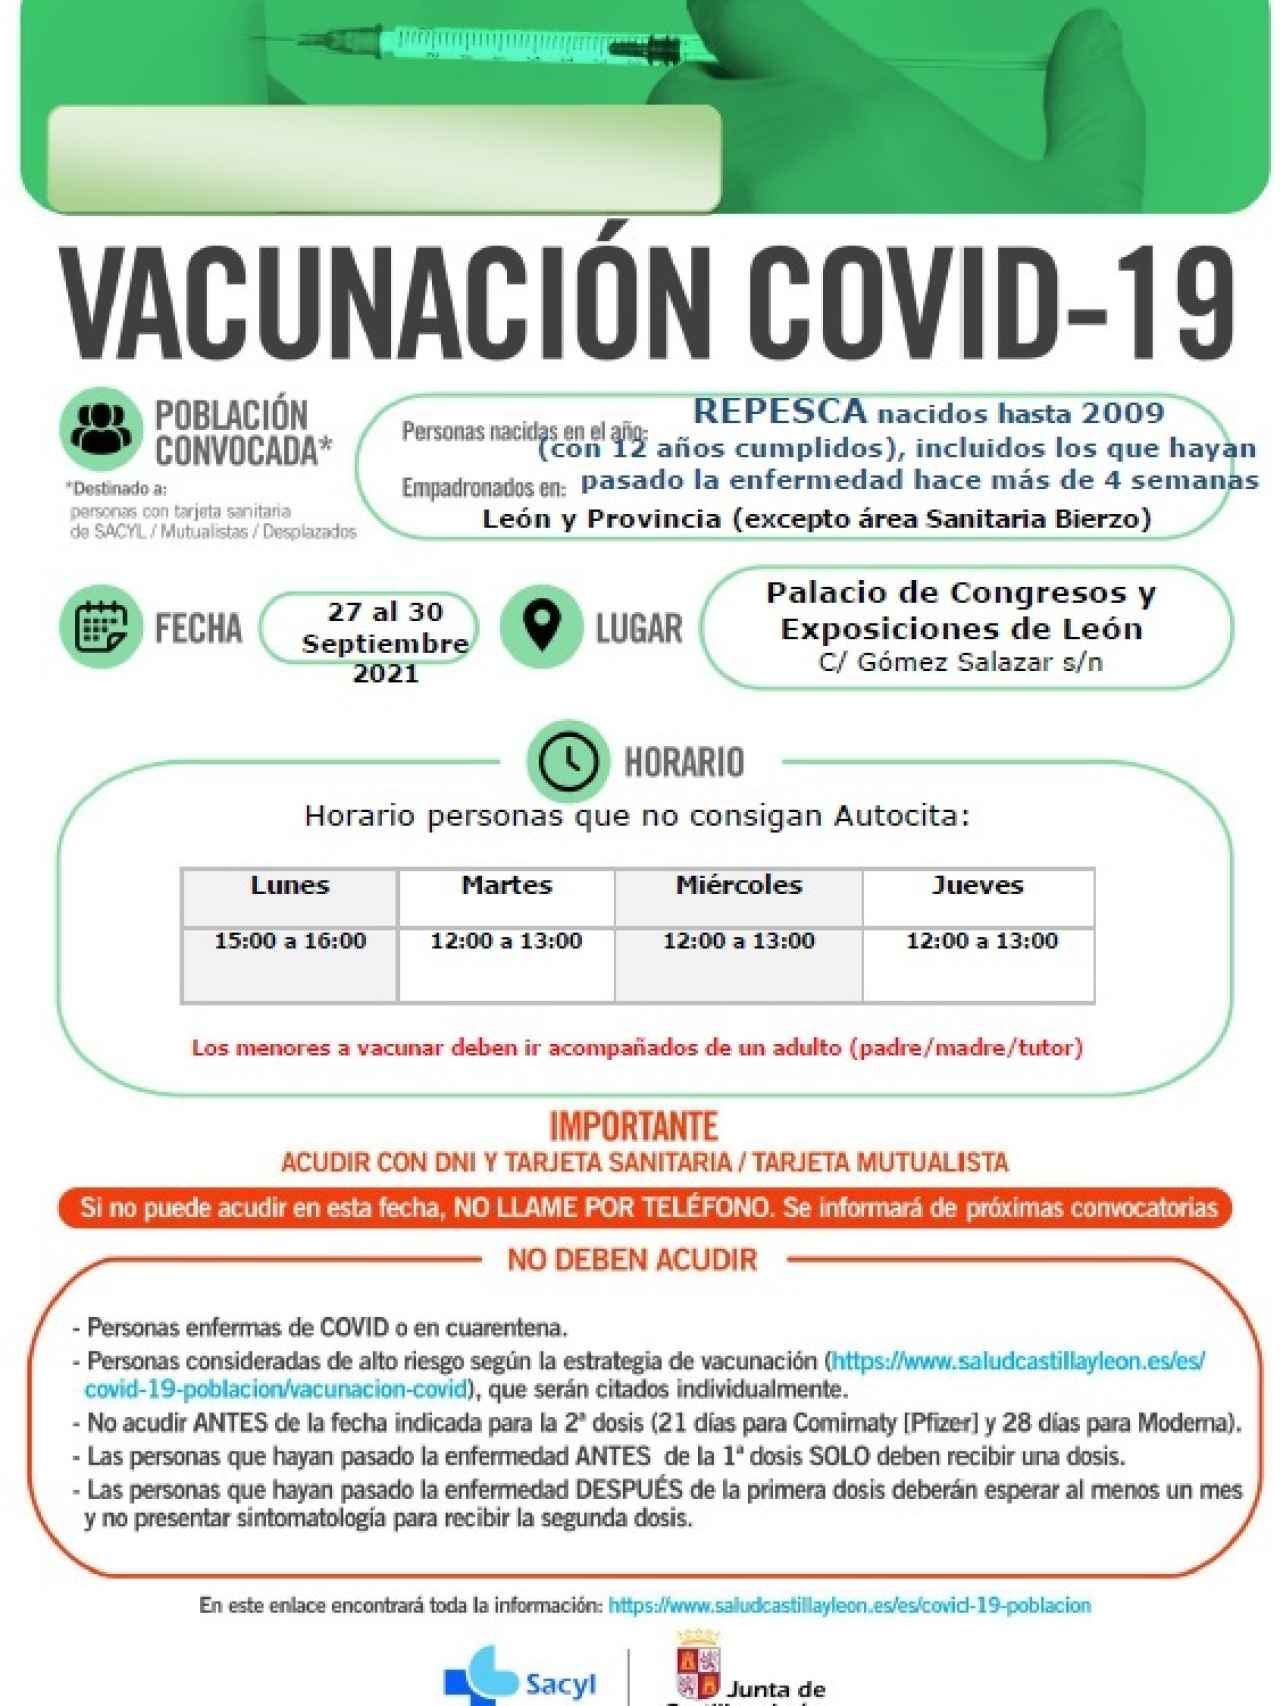 Repesca para la vacunación de los mayores de 12 años en León